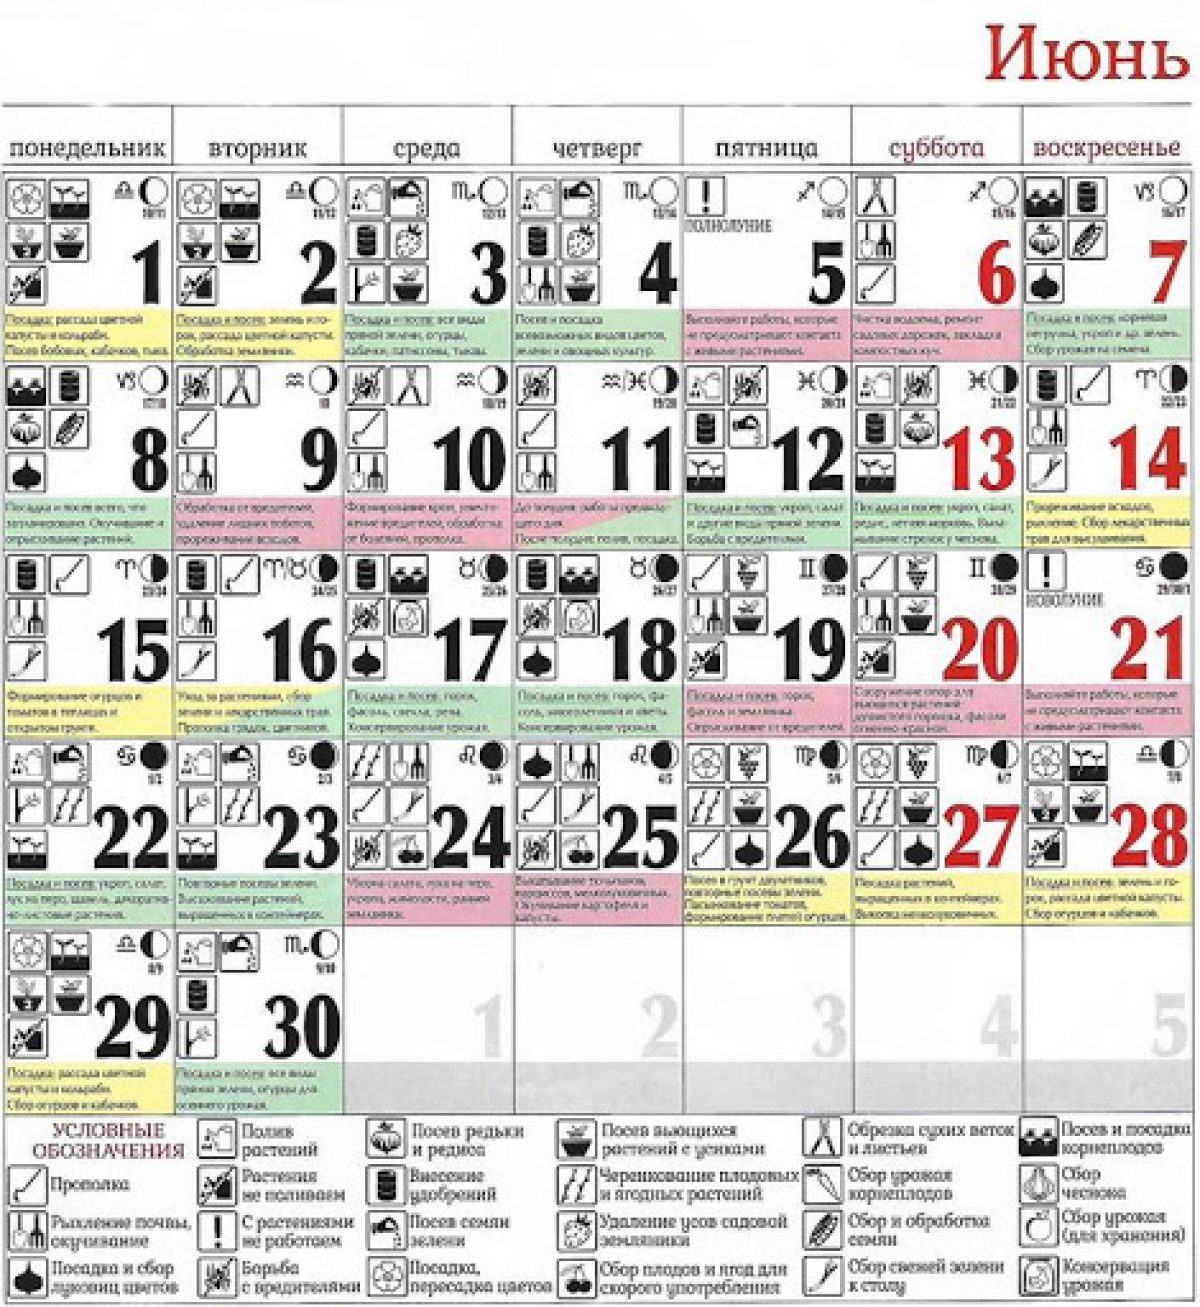 22 год июнь месяц. Лунный календарь. Лунный календарь на июнь 2020 года. Лунный посевной календарь на июнь 2020. Календарь садовода и огородника на июнь.